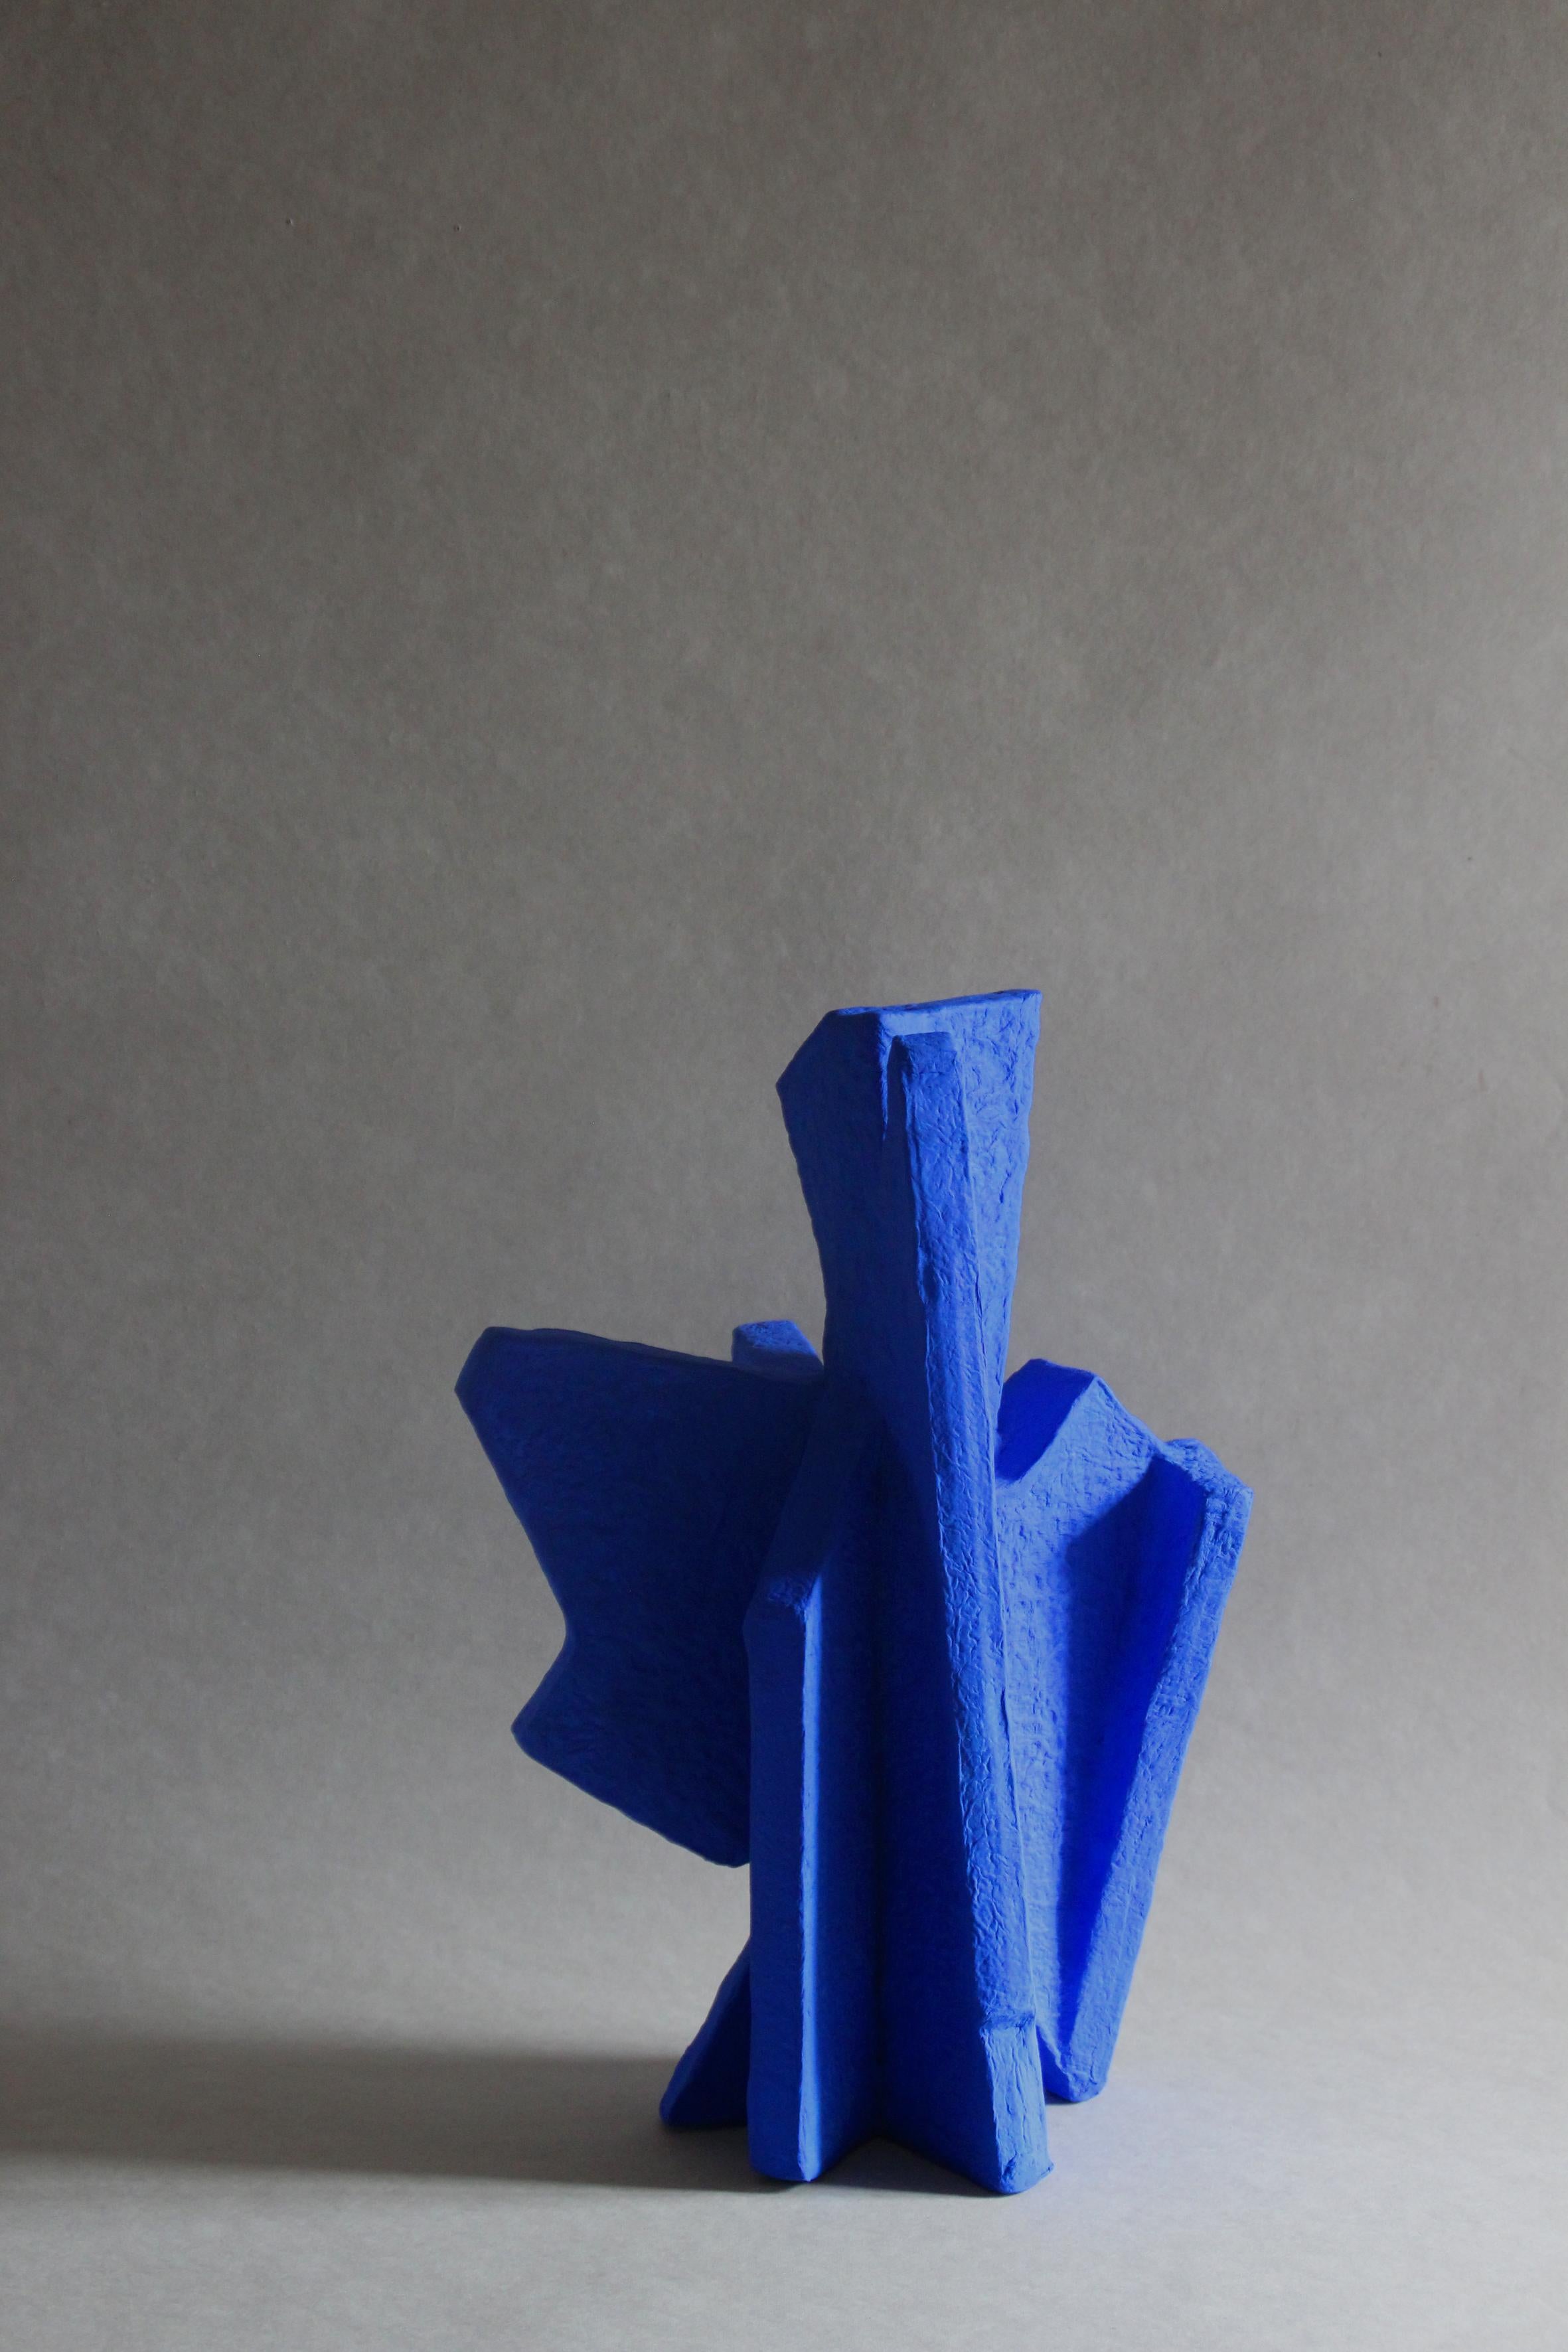 Partikel groß blau
Größe: B 300 T 250 H 420 mm

Die Kunst der Sache.
Geometrische Skulpturen aus handgeschöpftem Papier in verschiedenen Formen, Größen und Farben.

(PAPIER LANGACKERHA¨USL)
